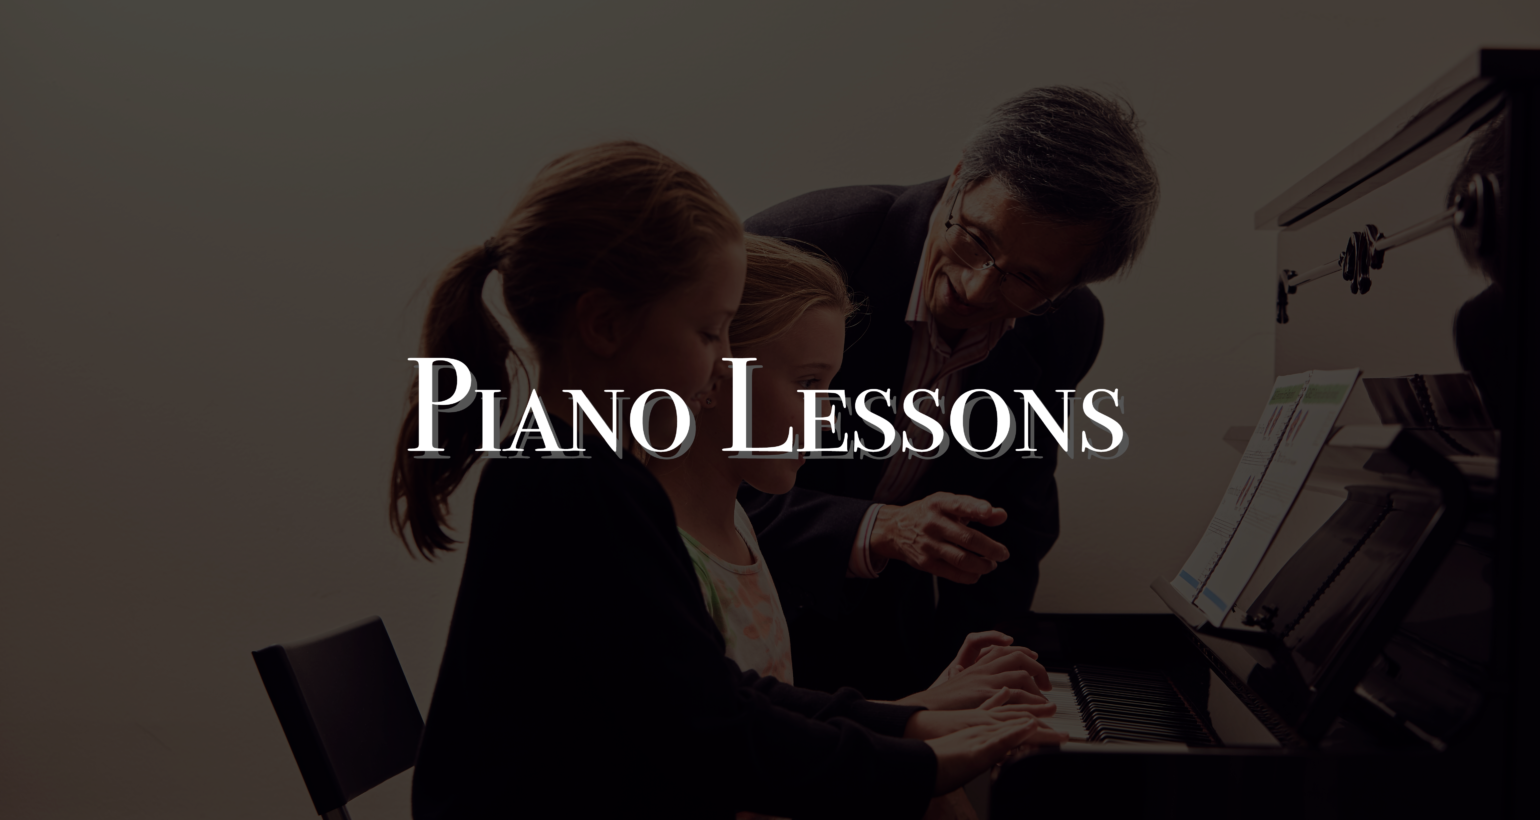 Piano lesson